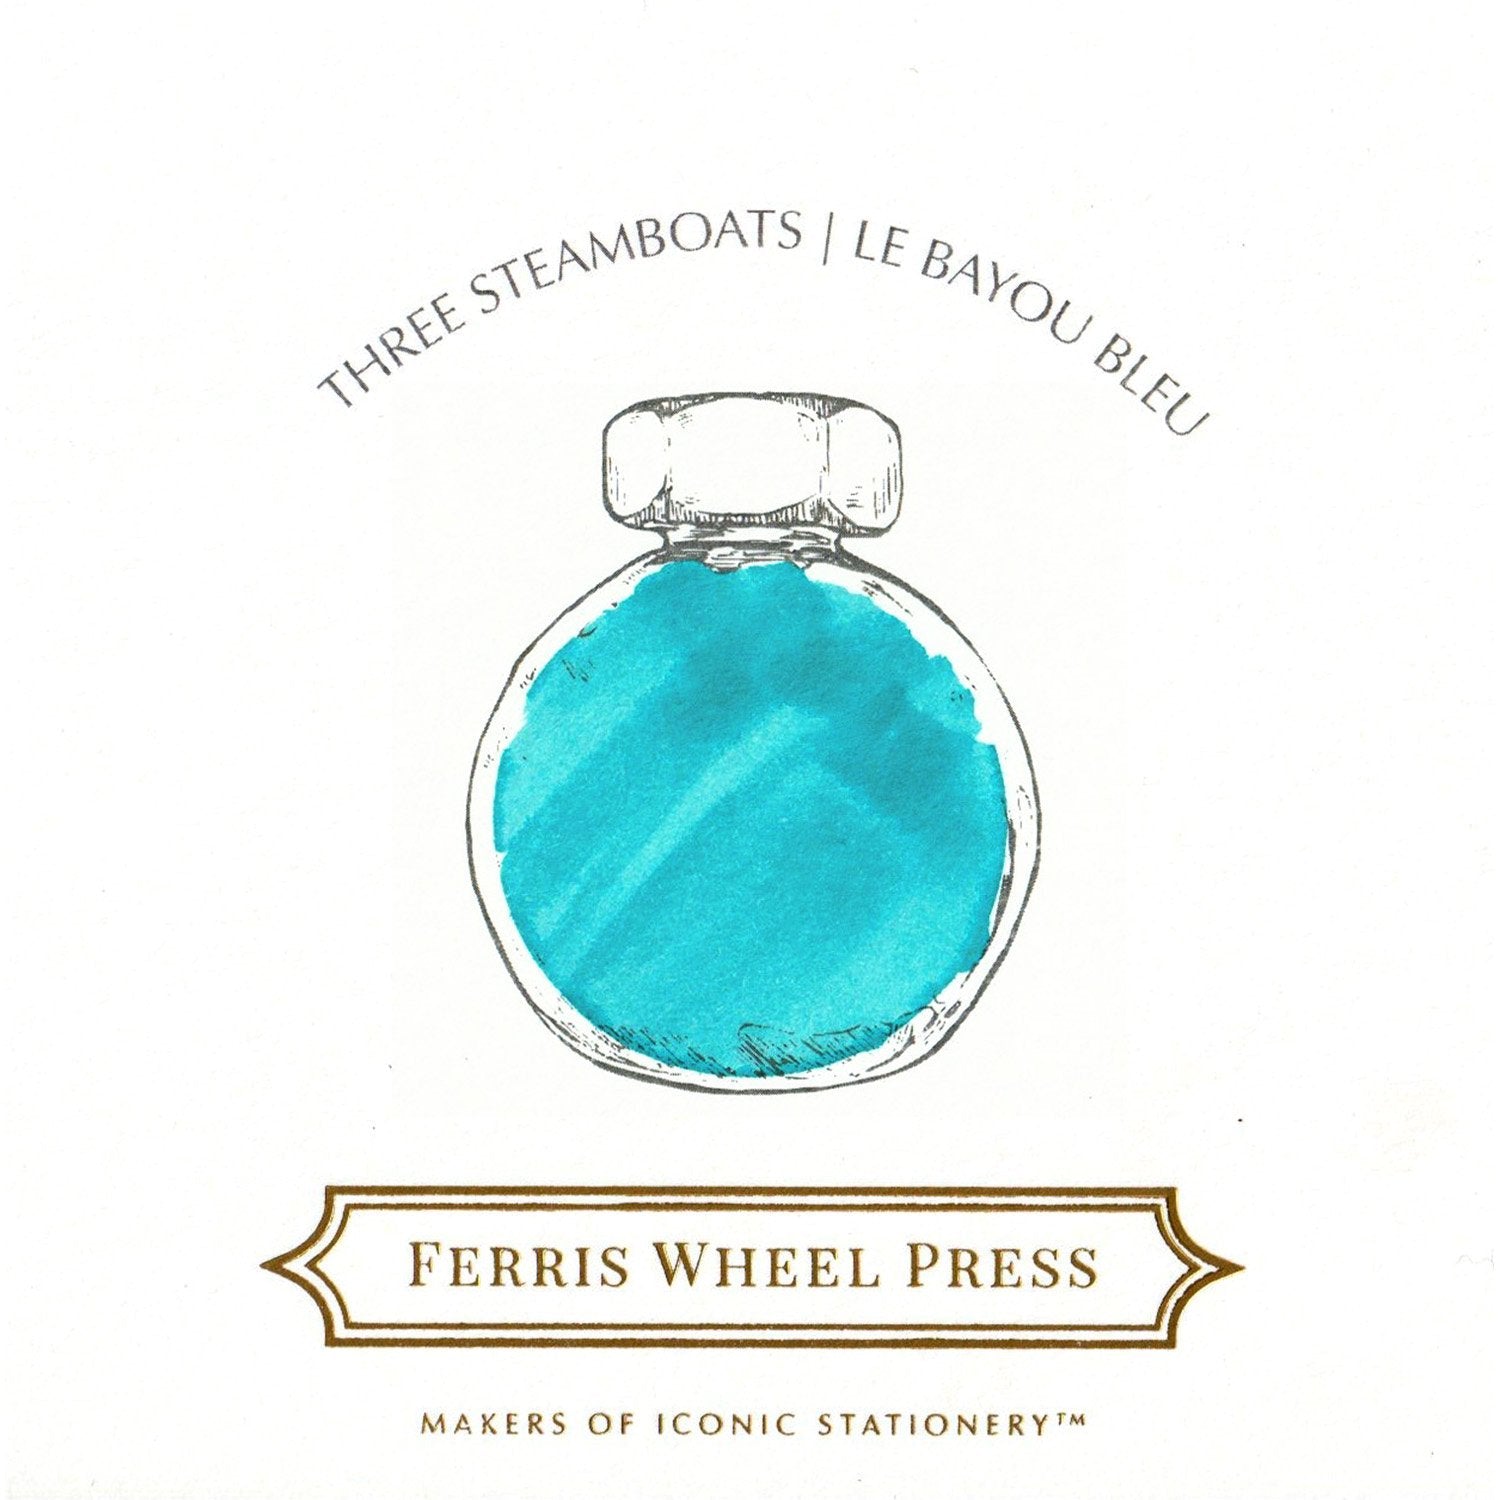 Three Steamboats - Ferris Wheel Press